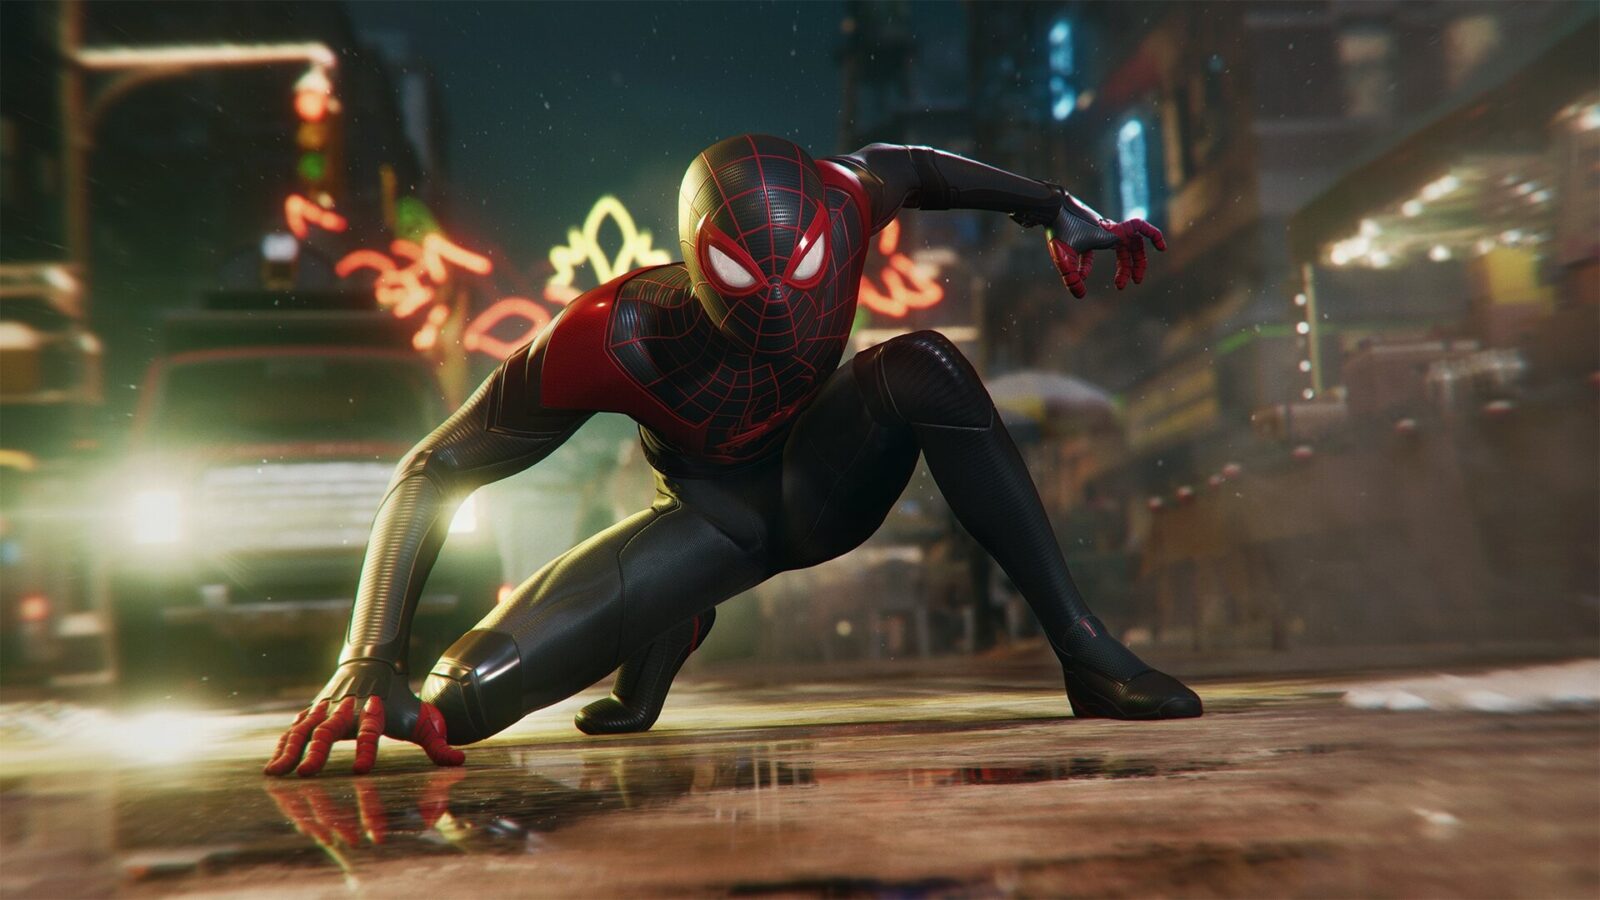 Crash Spider-Man: Miles Morales di PS5 Tidak Akan Merusak Konsol